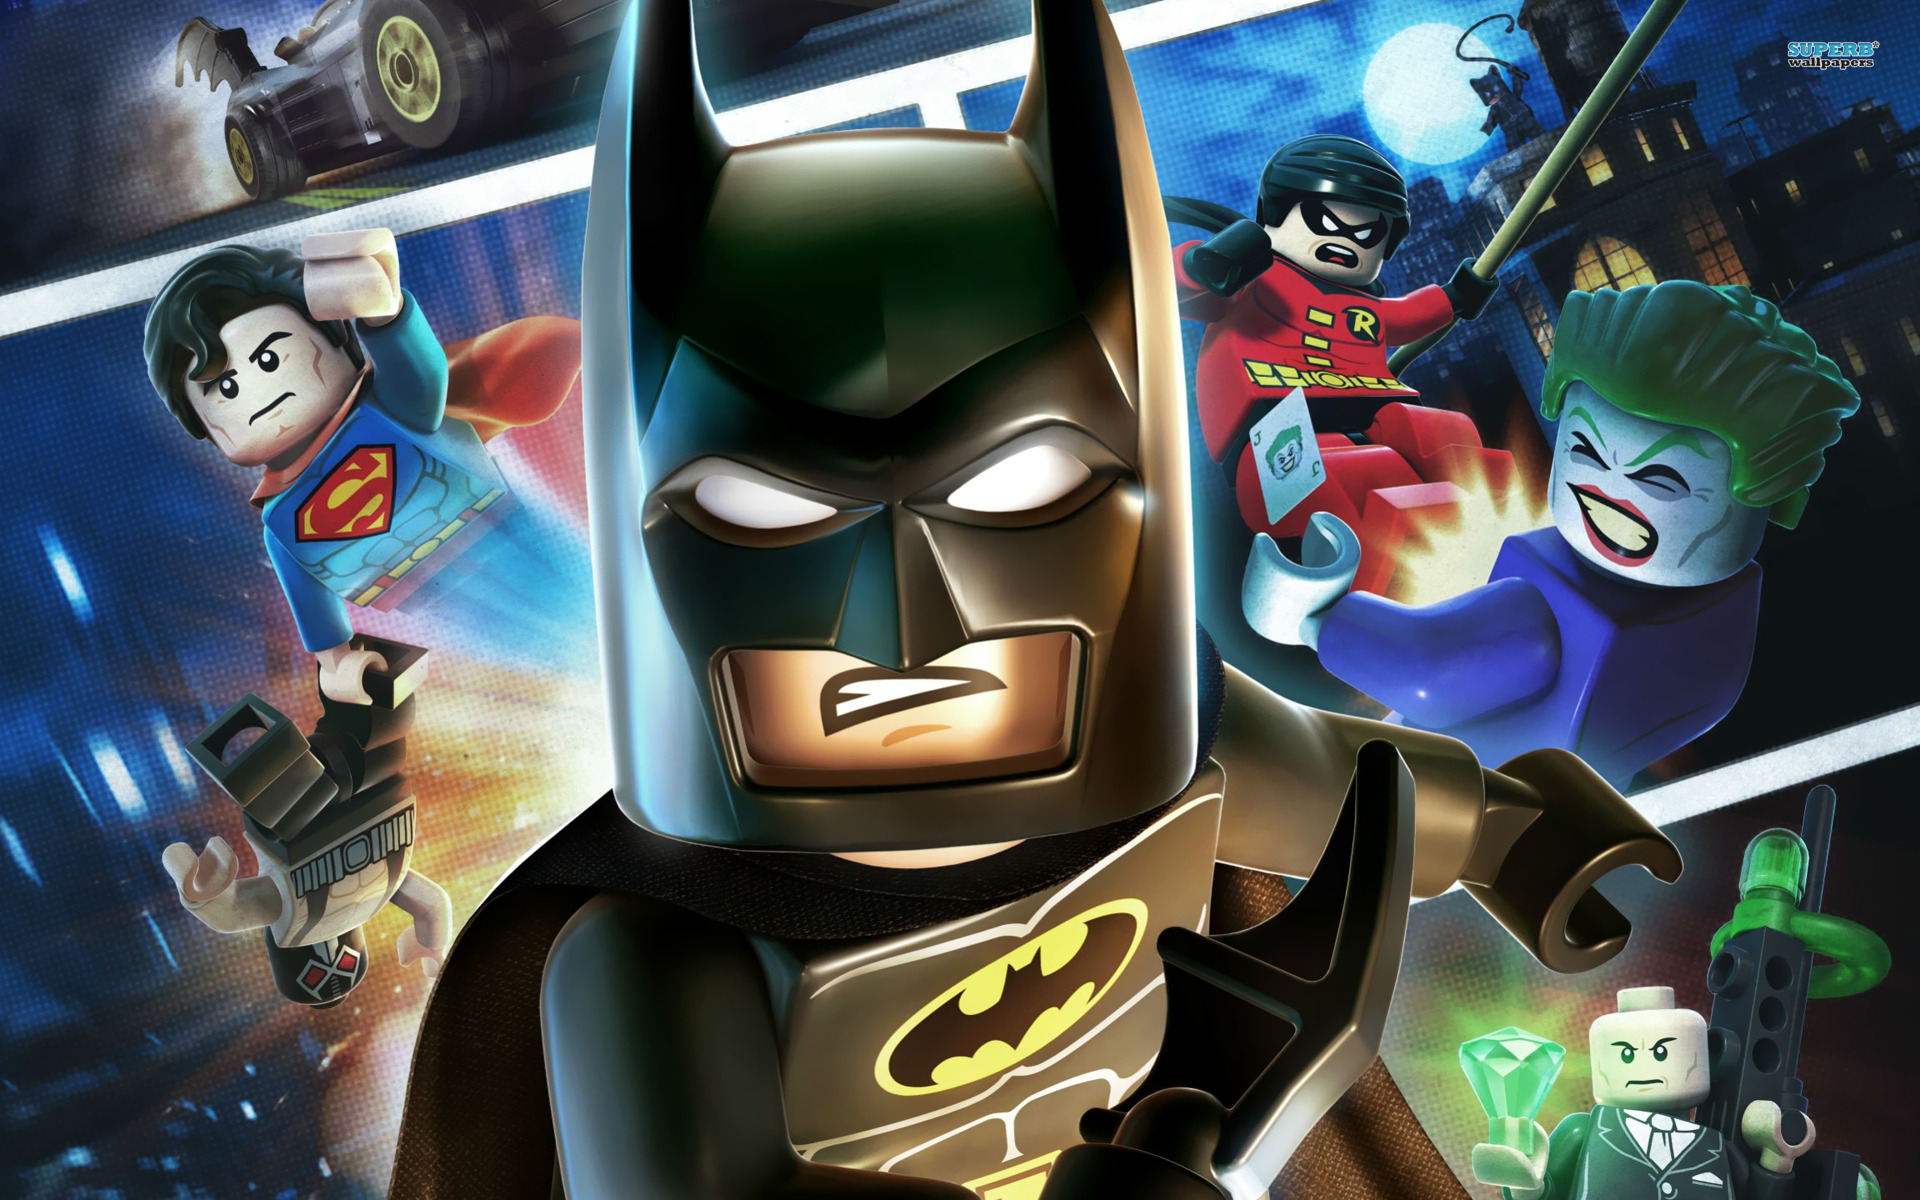 Lego Batman 2 : DC Super Heroes